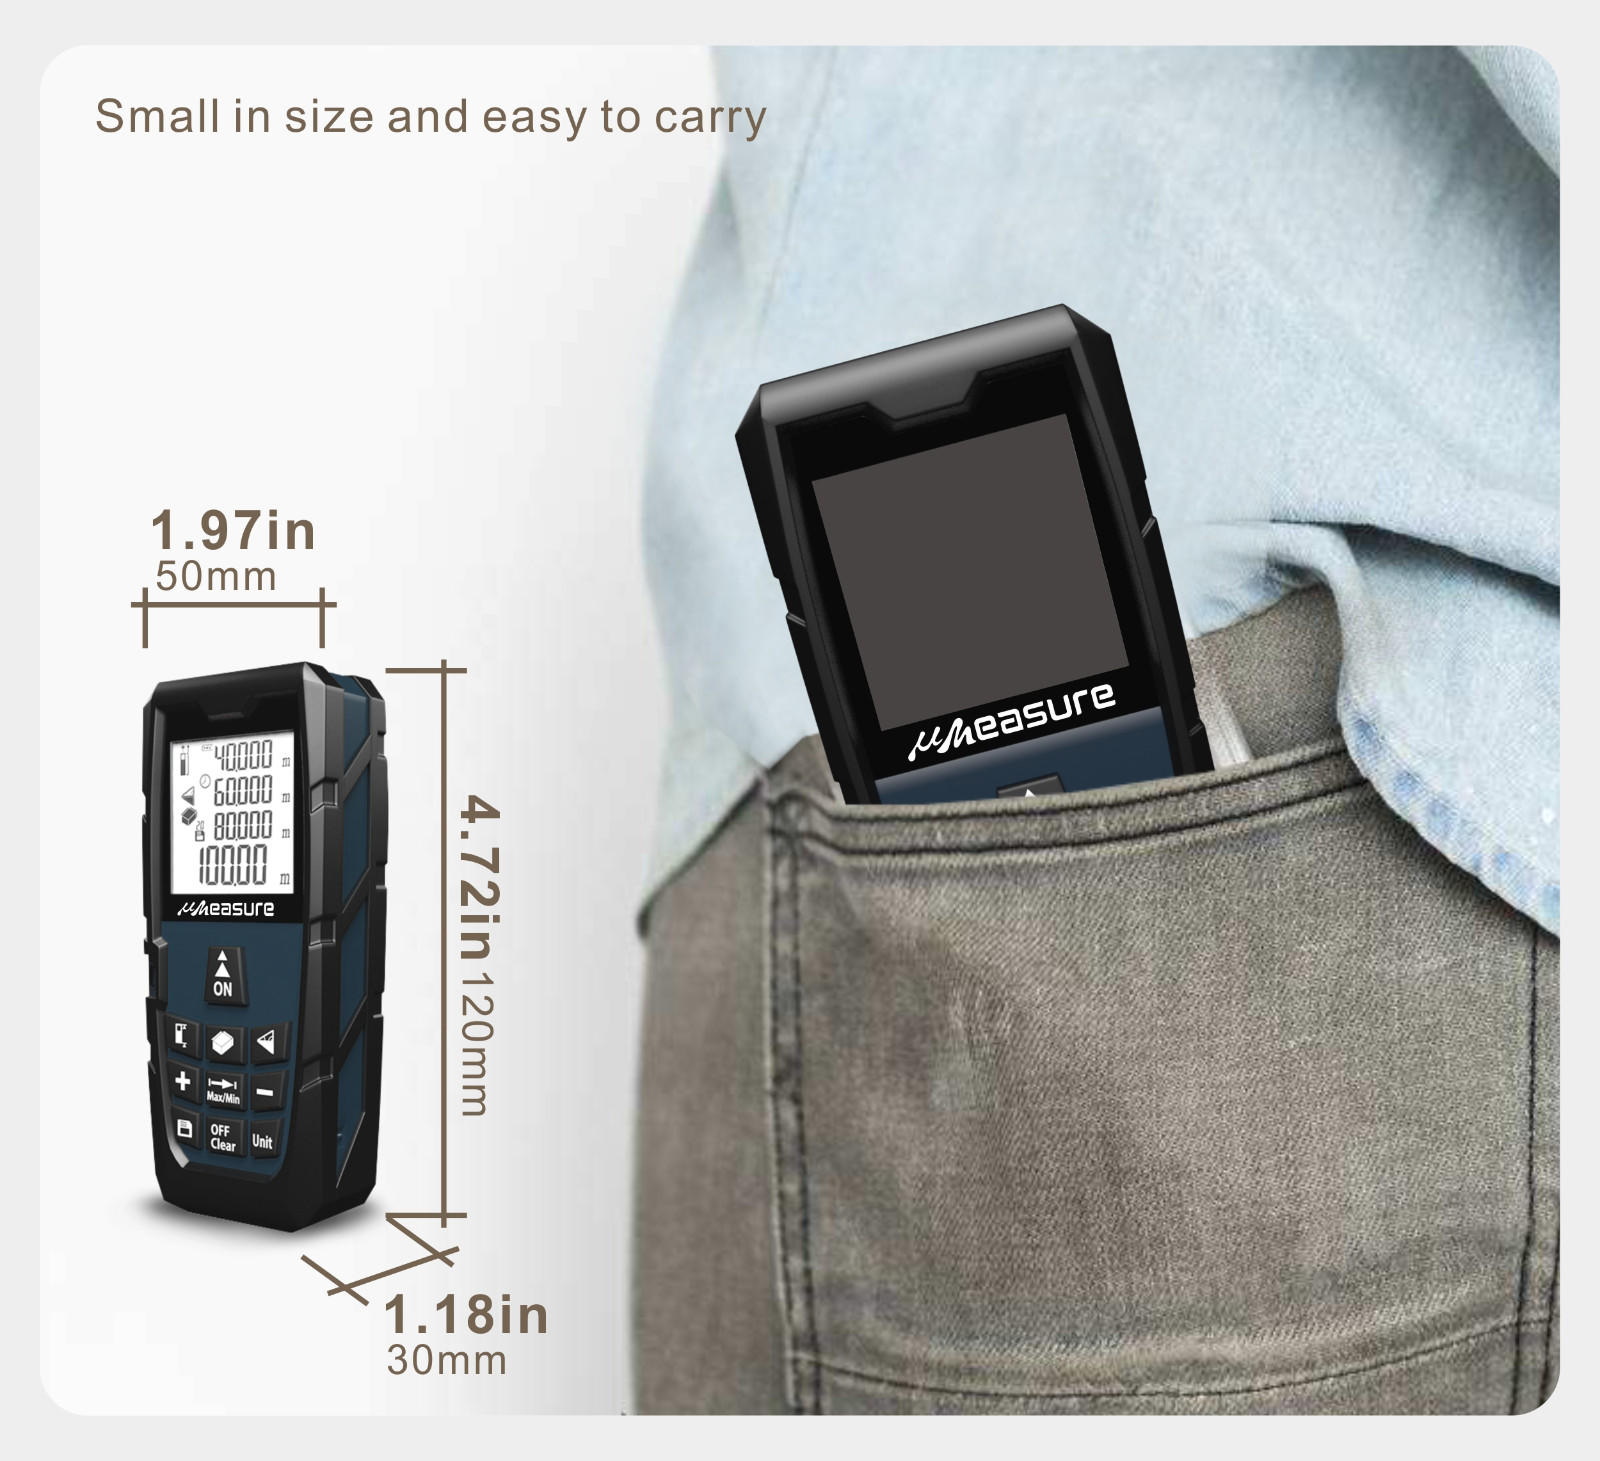 UMeasure line digital measuring device handhold for sale